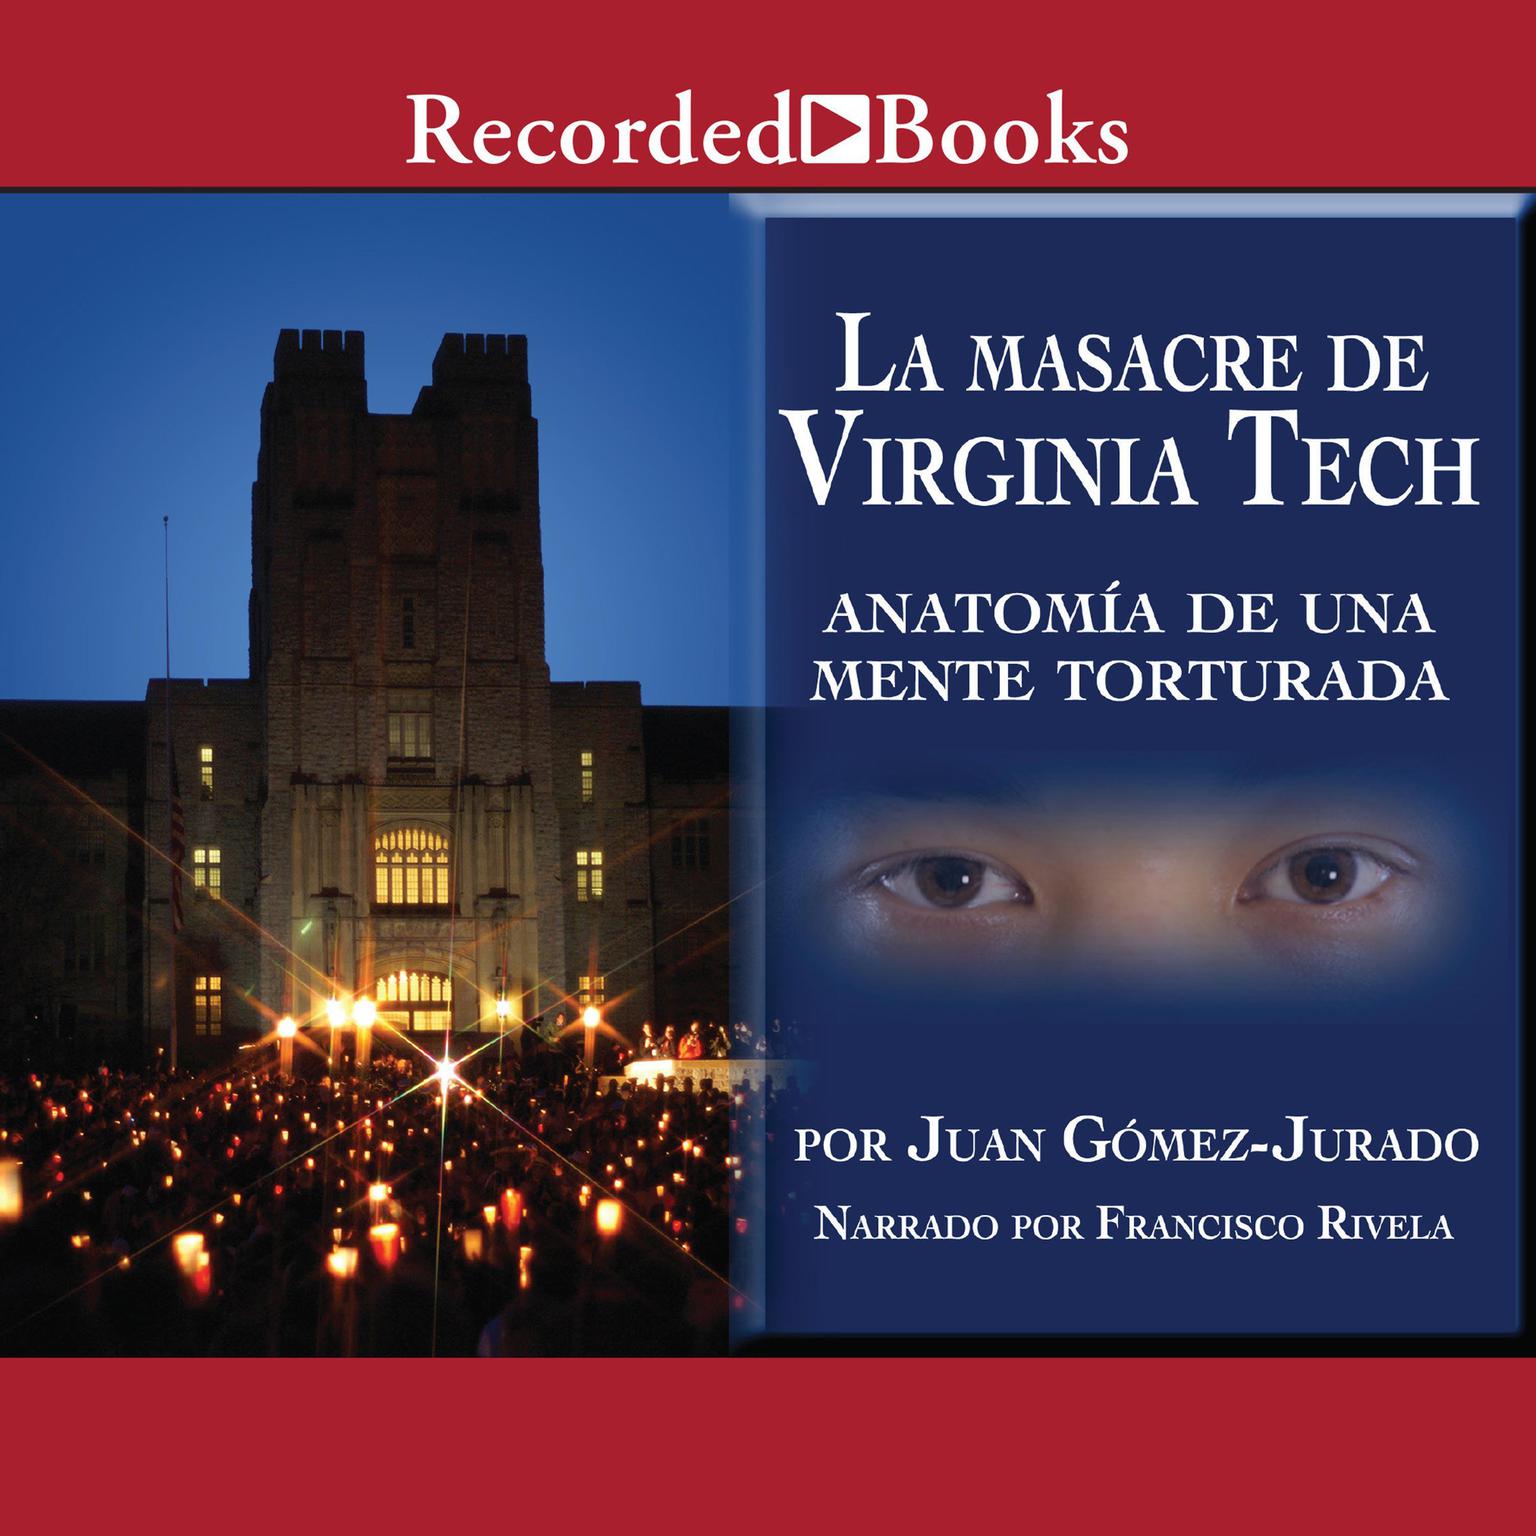 La masacre de Virginia Tech Audiobook, by Juan Gomez-Jurado